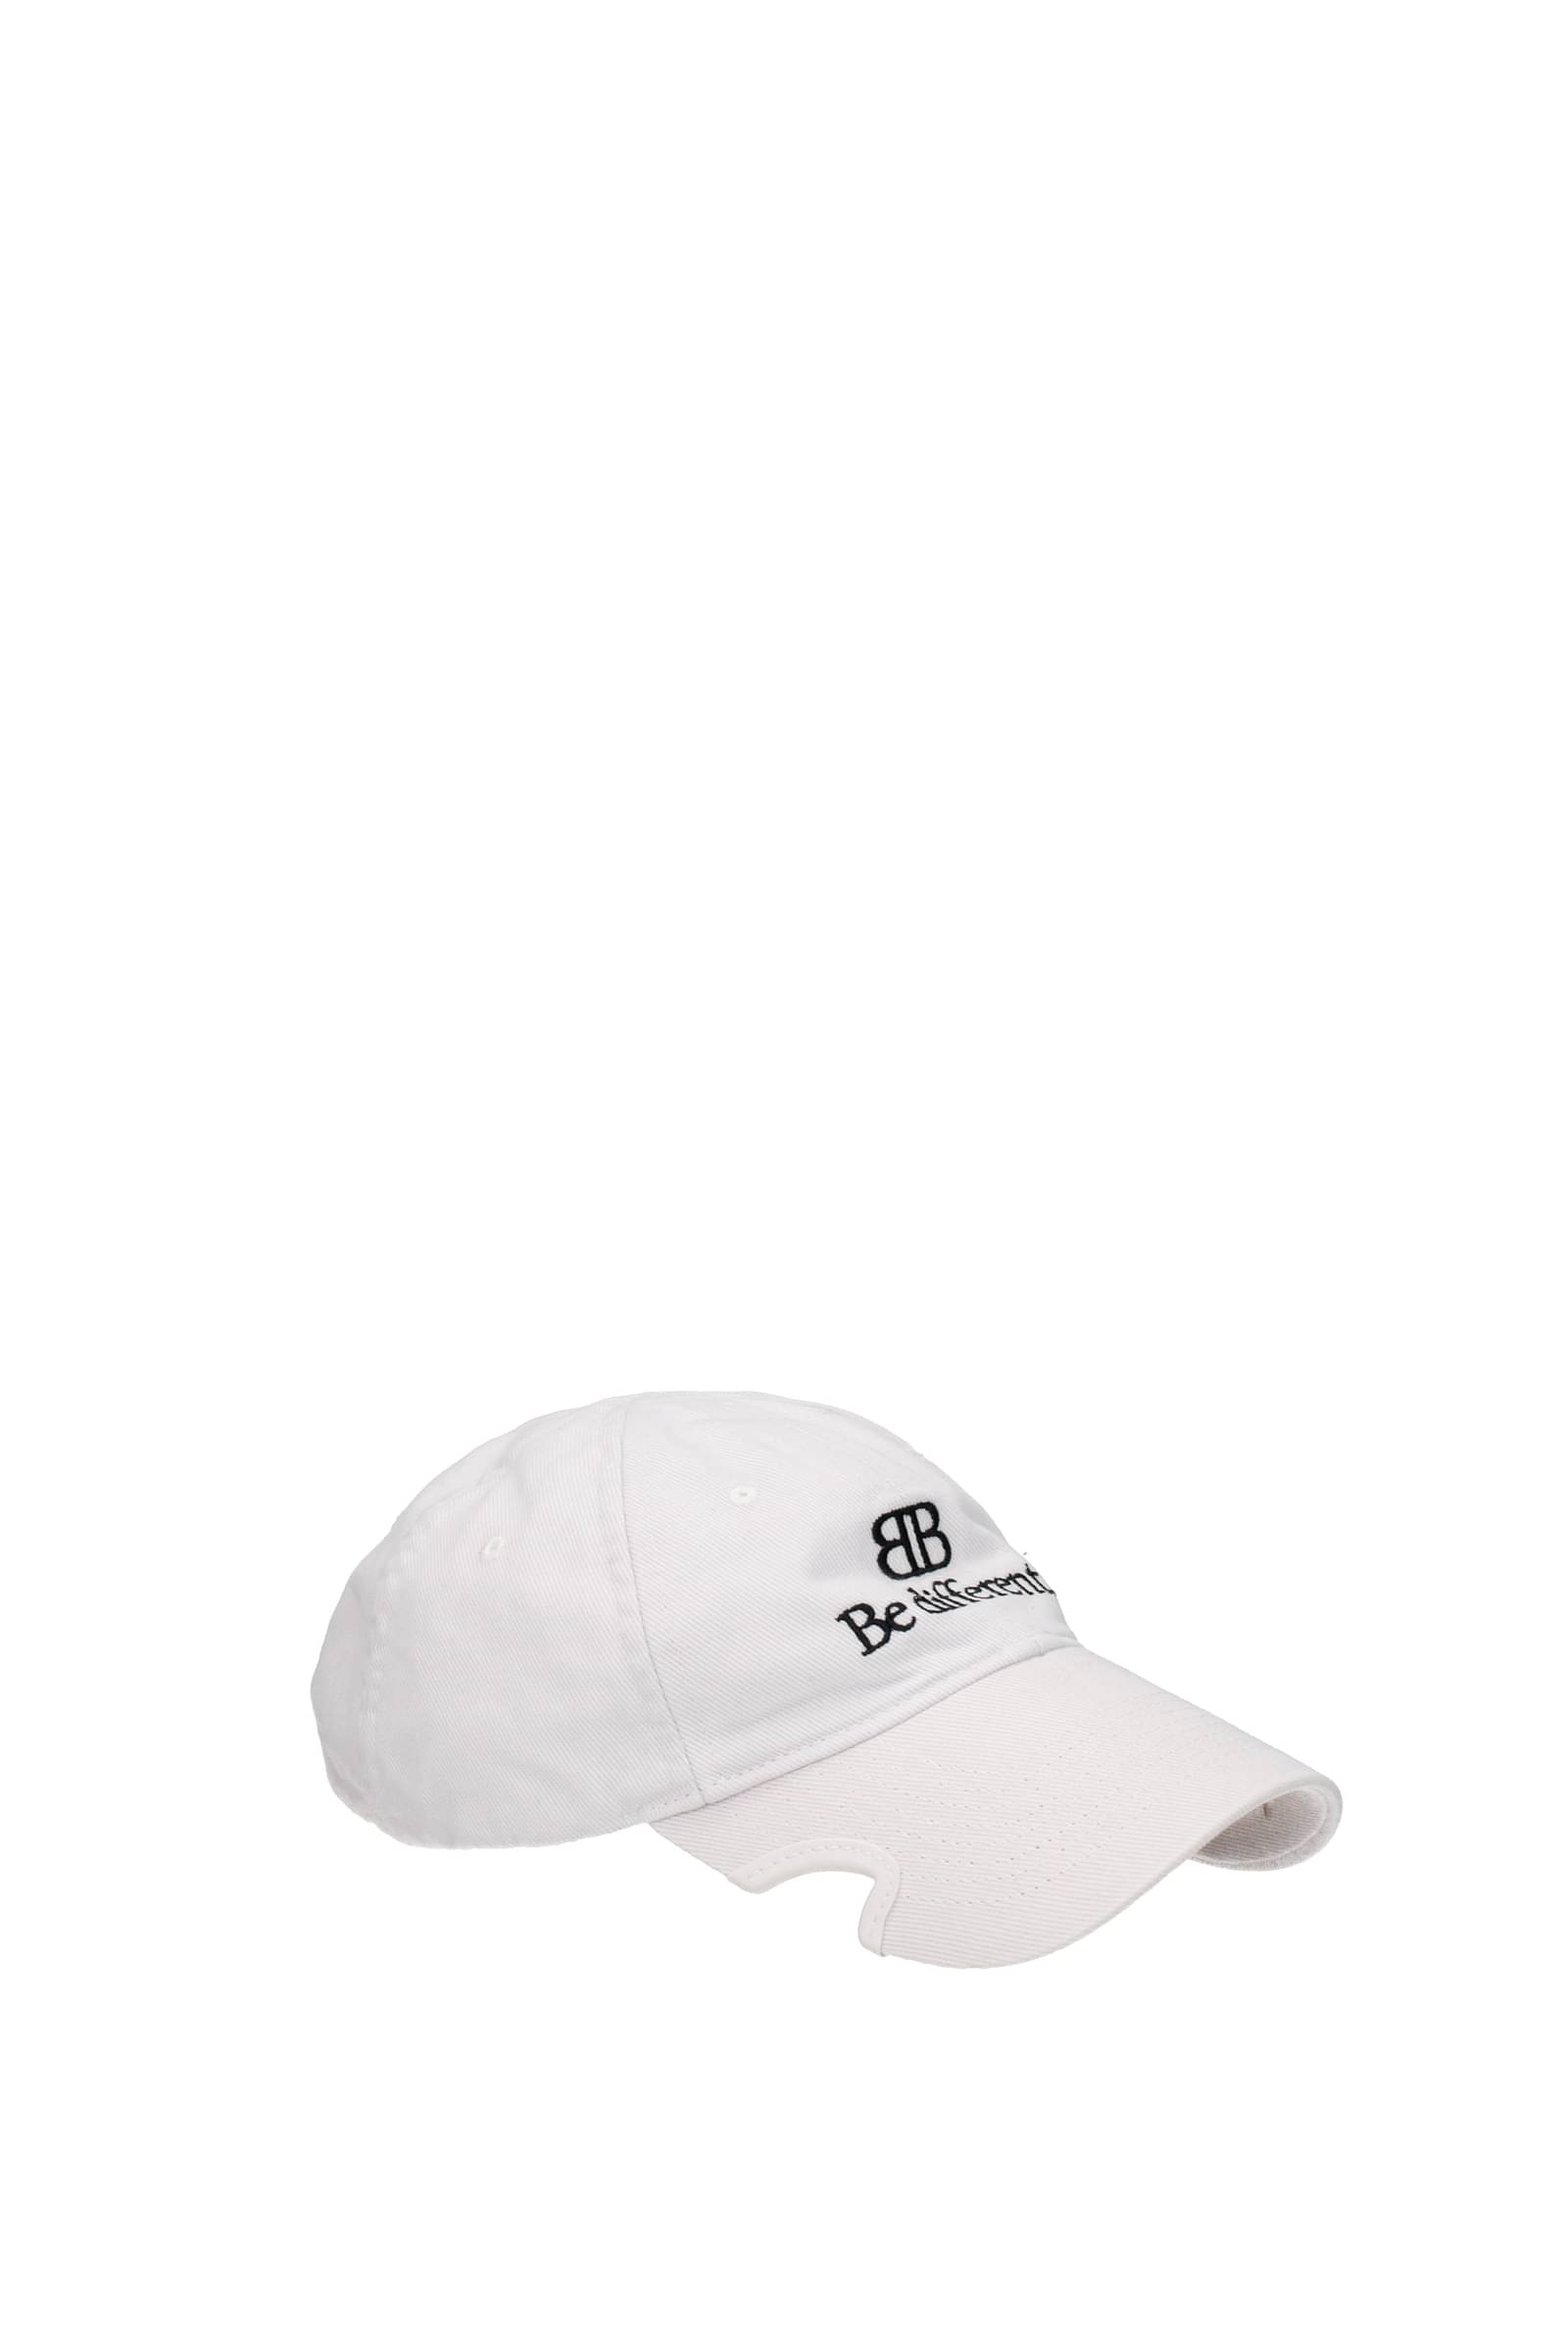 Buy Cheap Balenciaga Hats 999935267 from AAAClothingis